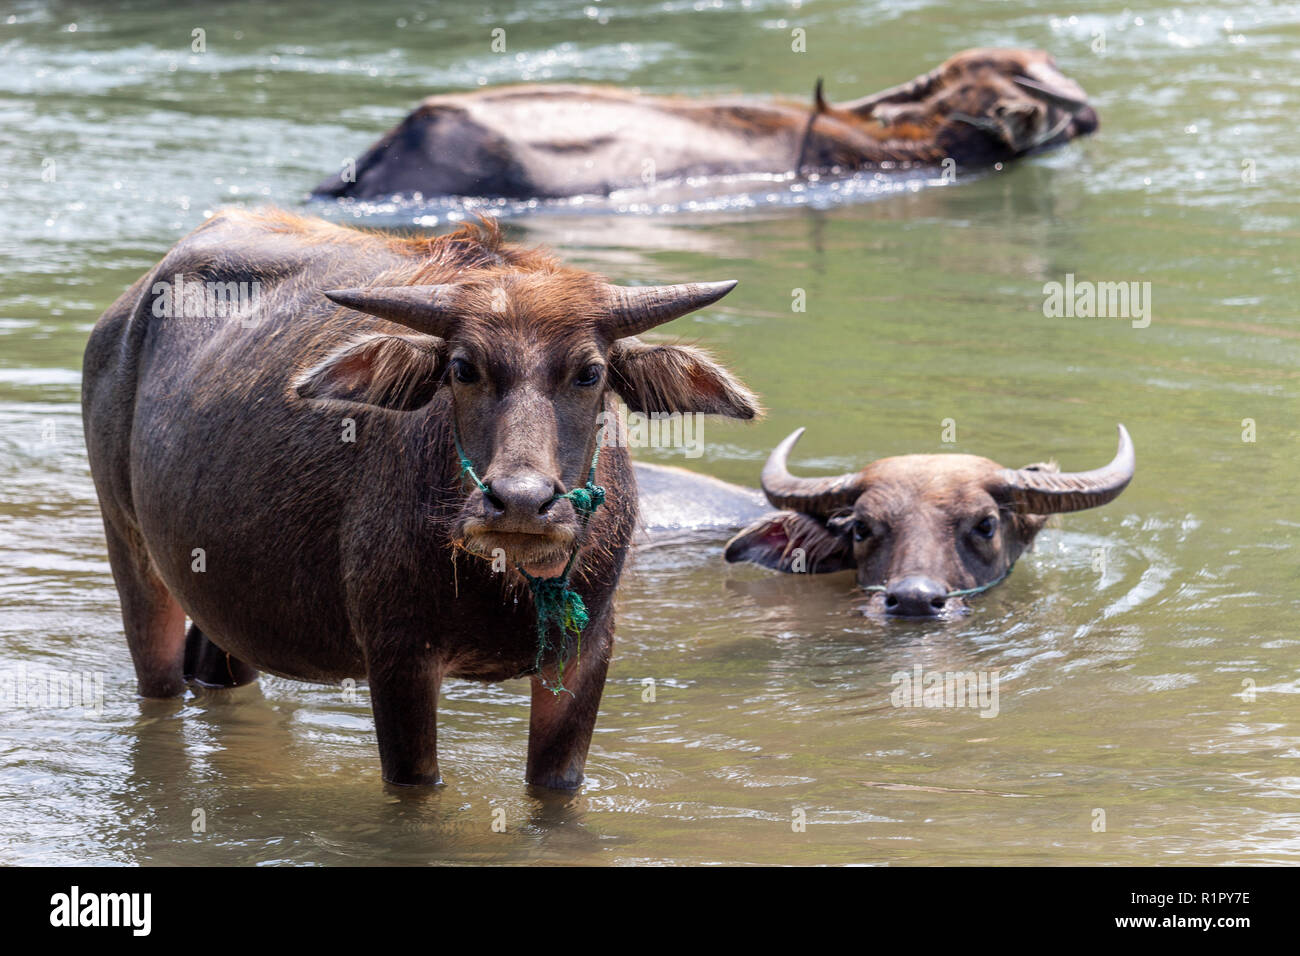 Don Det, Laos - Aprile 22, 2018: Wild bufali nelle acque del fiume Mekong sulle isole 4000 zona vicino al confine cambogiano Foto Stock